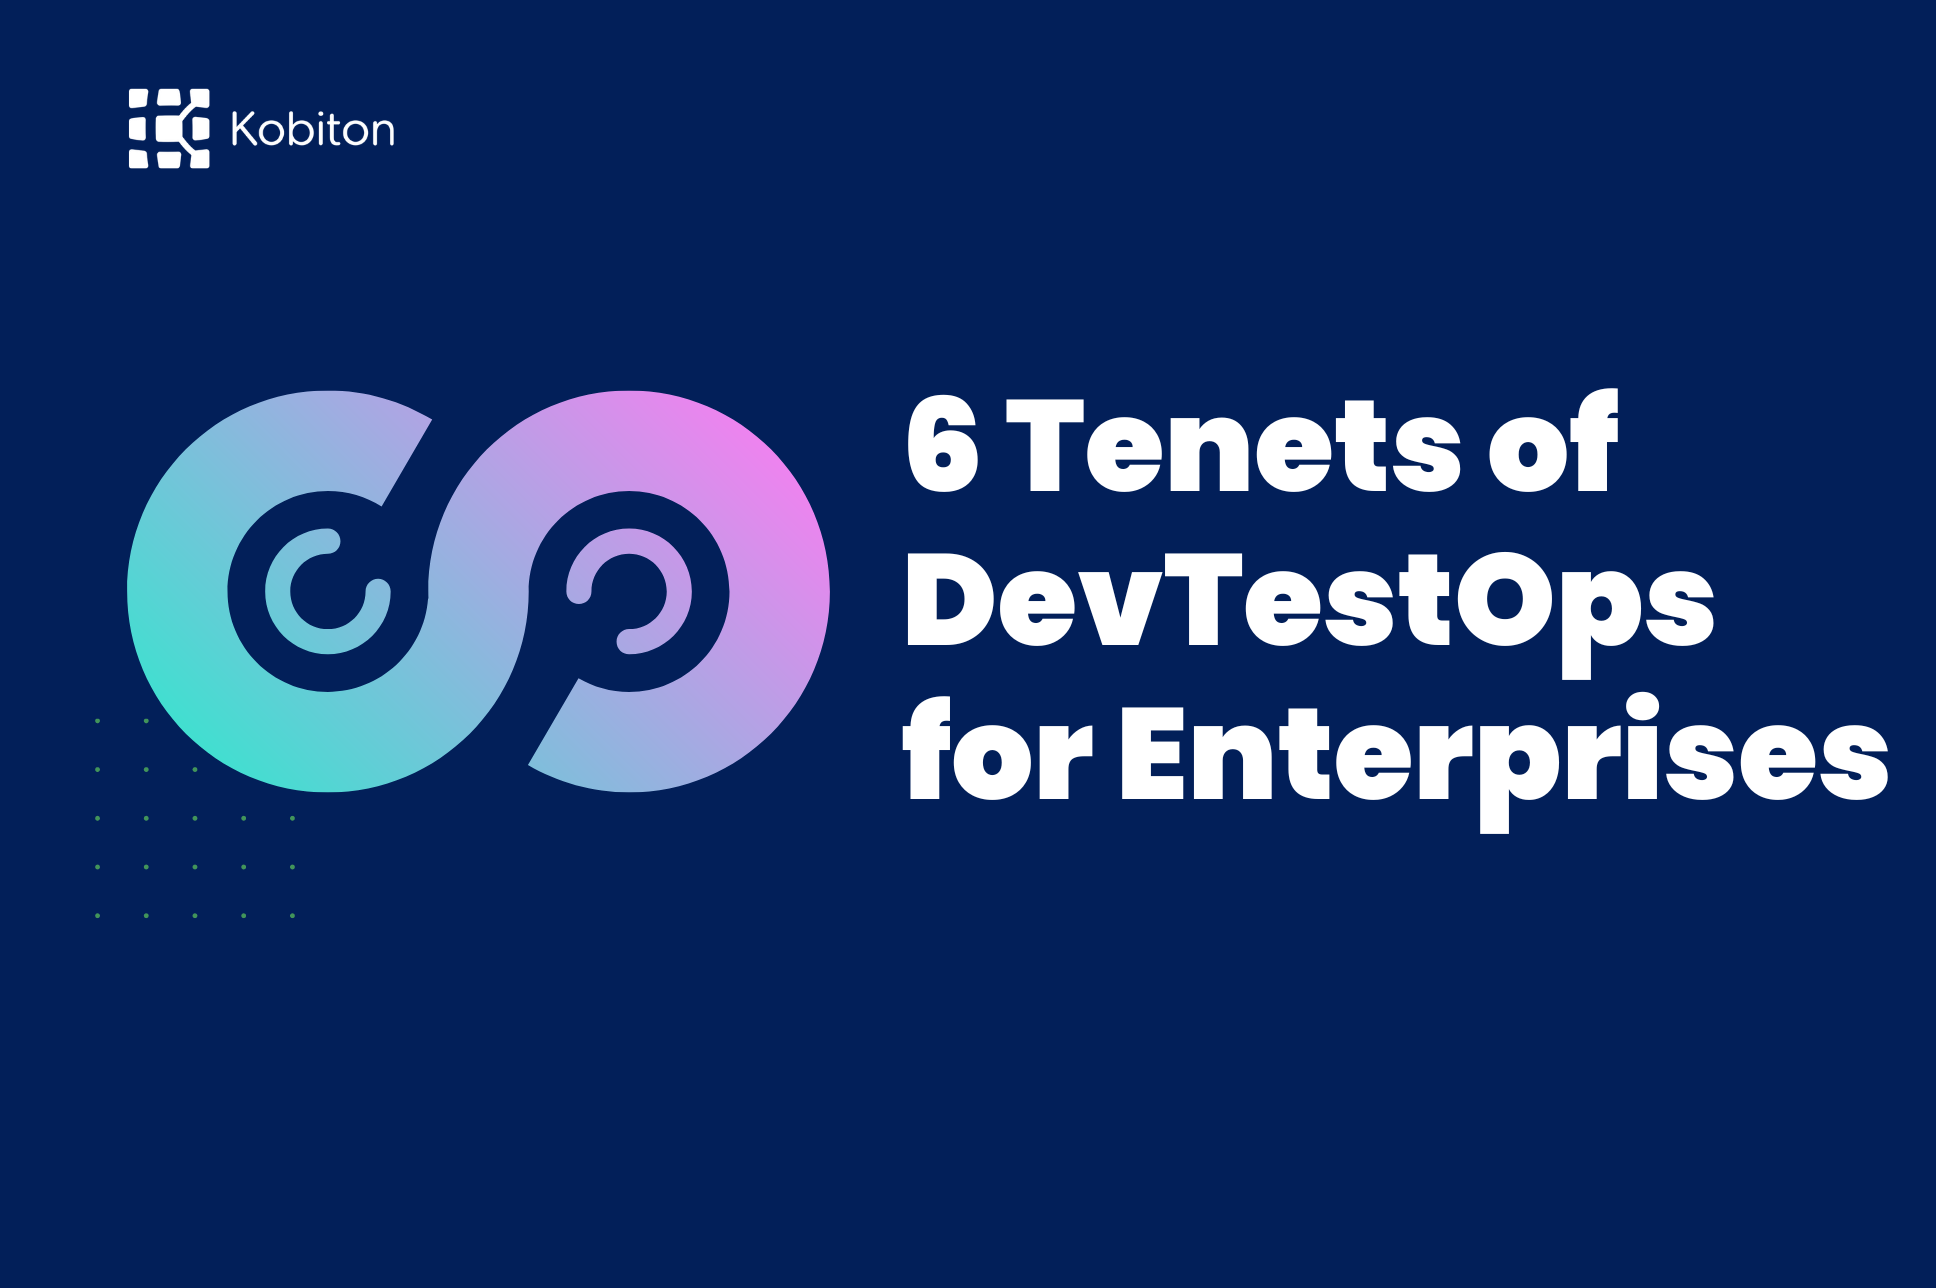 6 Tenets of DevTestOps for Enterprises